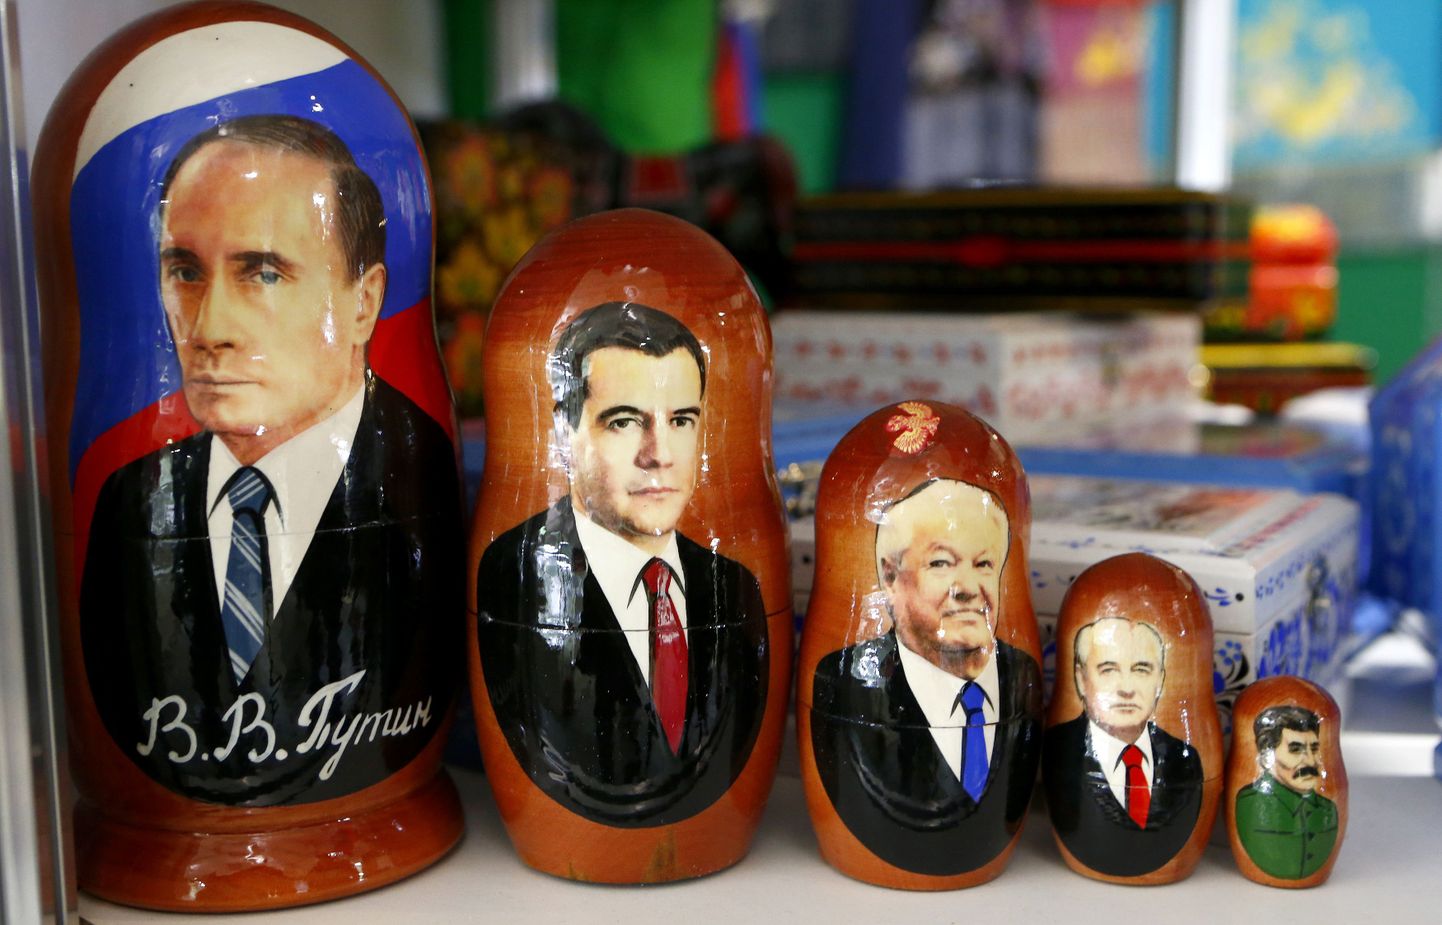 Vene riigimehi Vladimir Putinit, Dmitri Medvedevit, Boriss Jeltsinit,Mihhail Gorbatšovi ja Jossif Stalinit kujutavad matrjoška nukud